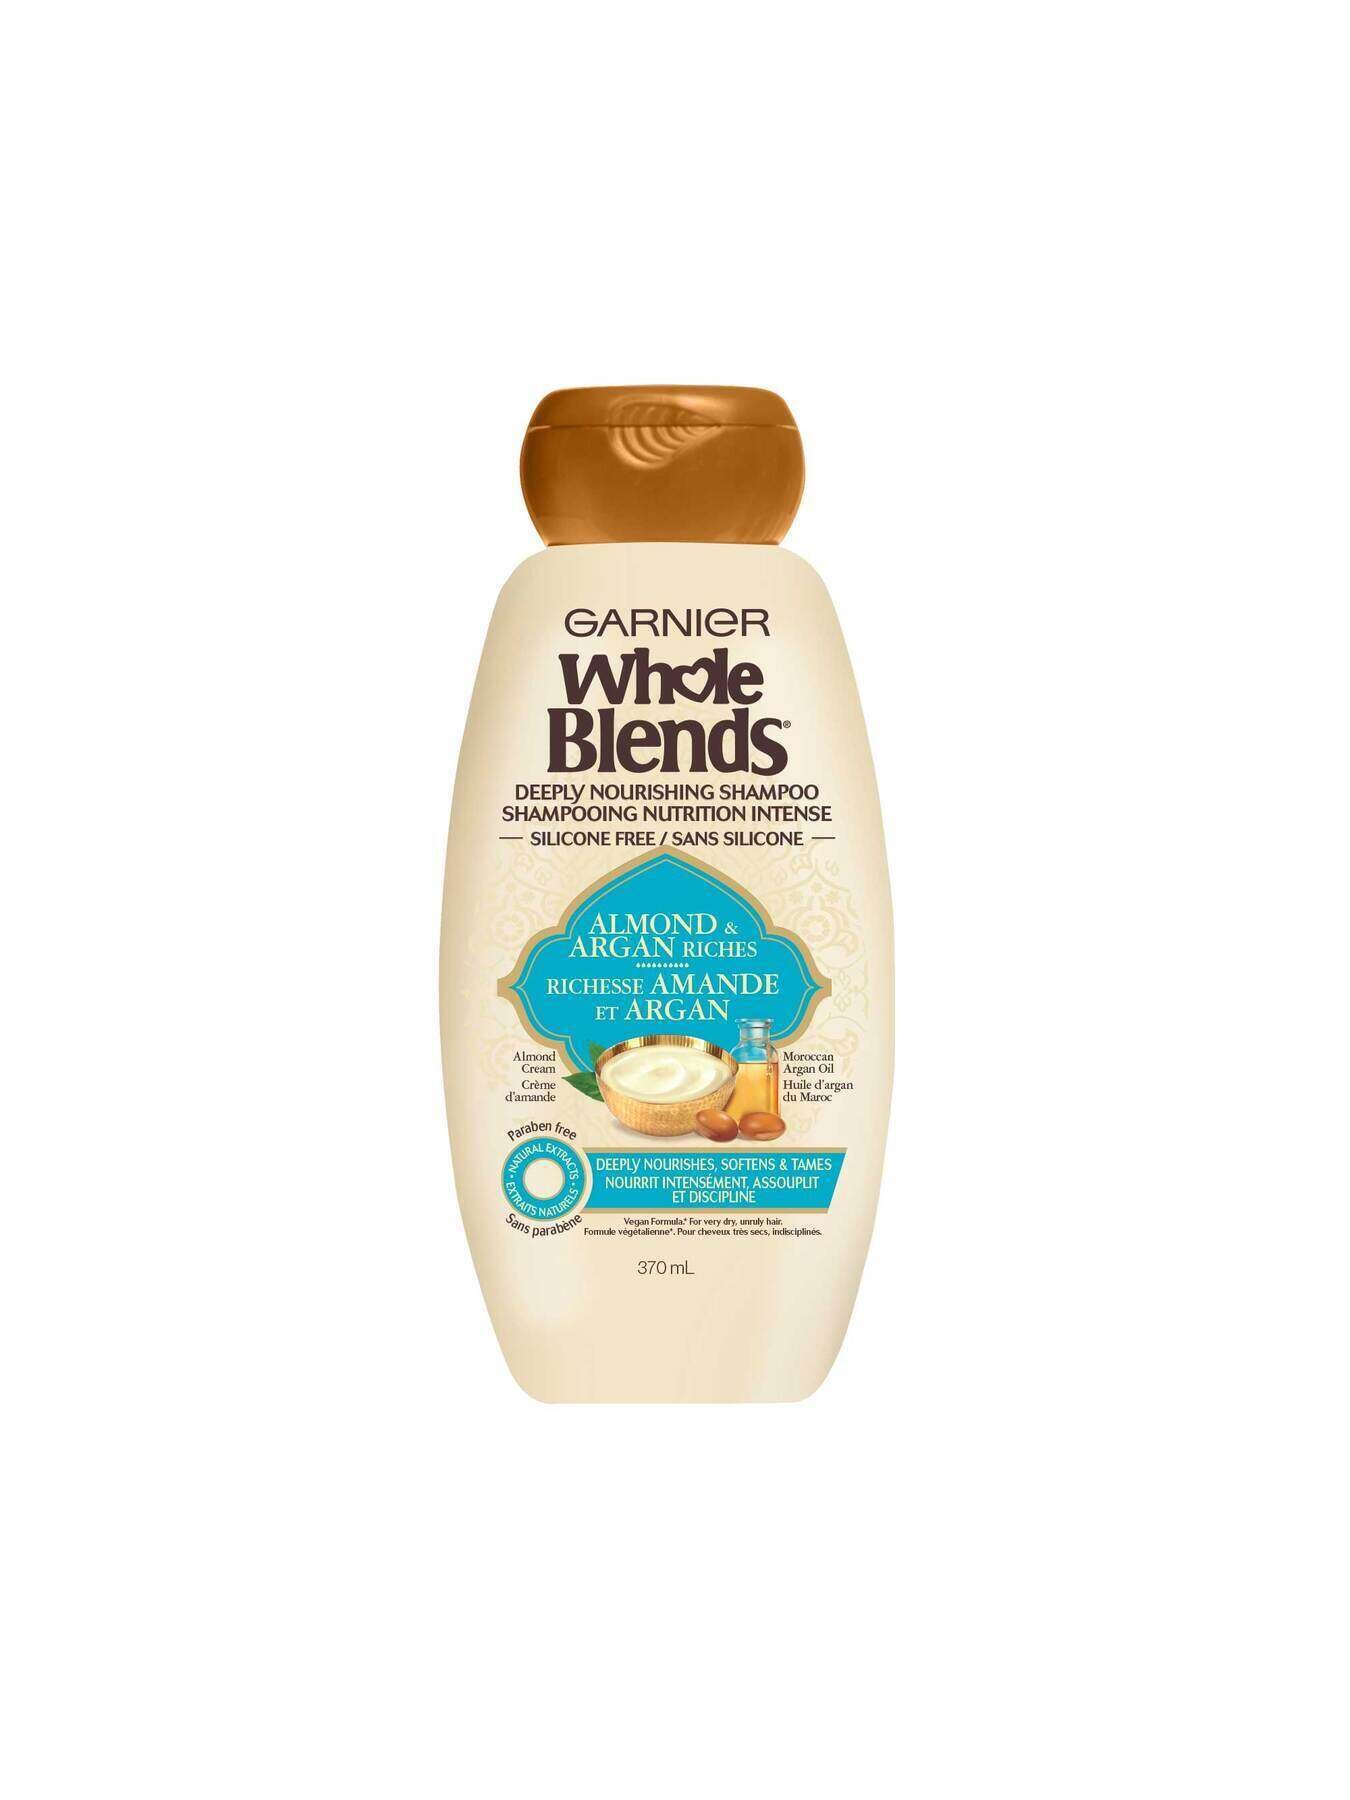 garnier shampoo whole blends almond argan riches shampoo 370 ml 603084563609 t1